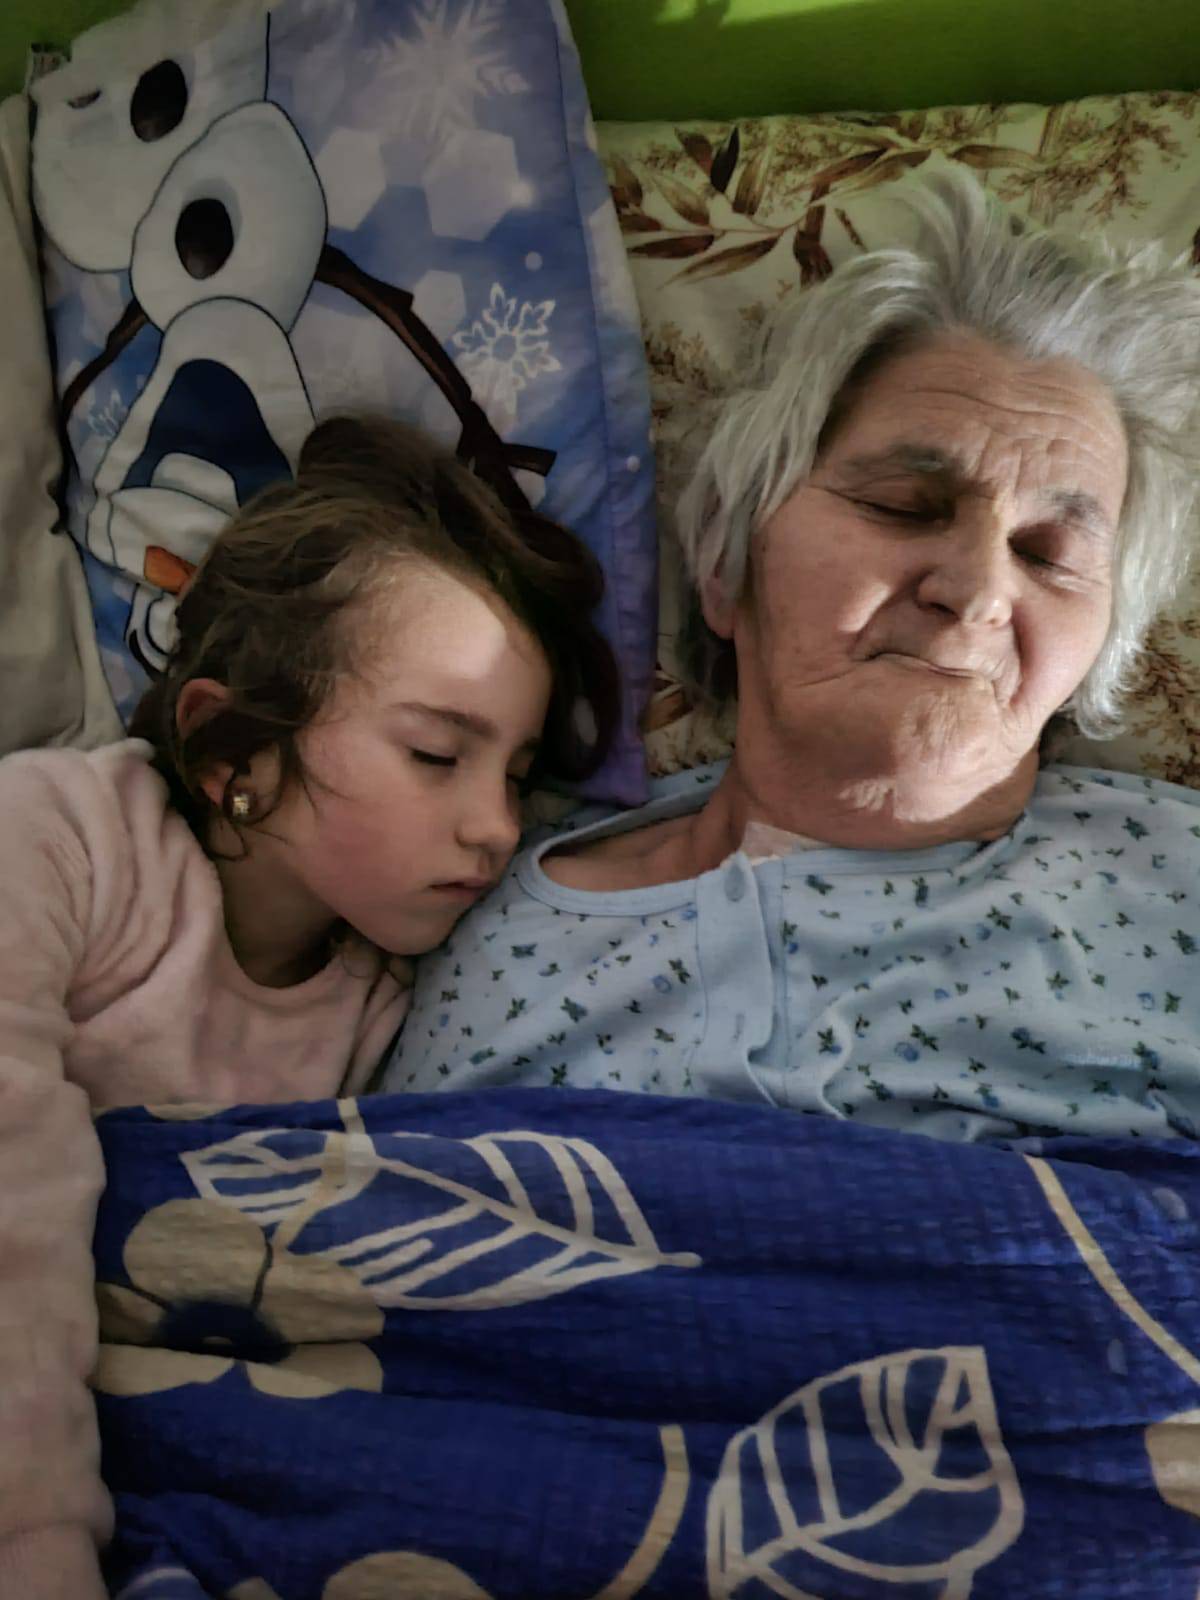 Baka Iva (76) je s rakom kostiju nakon 26 dana u respiracijskom centru uspjela pobijediti koronu